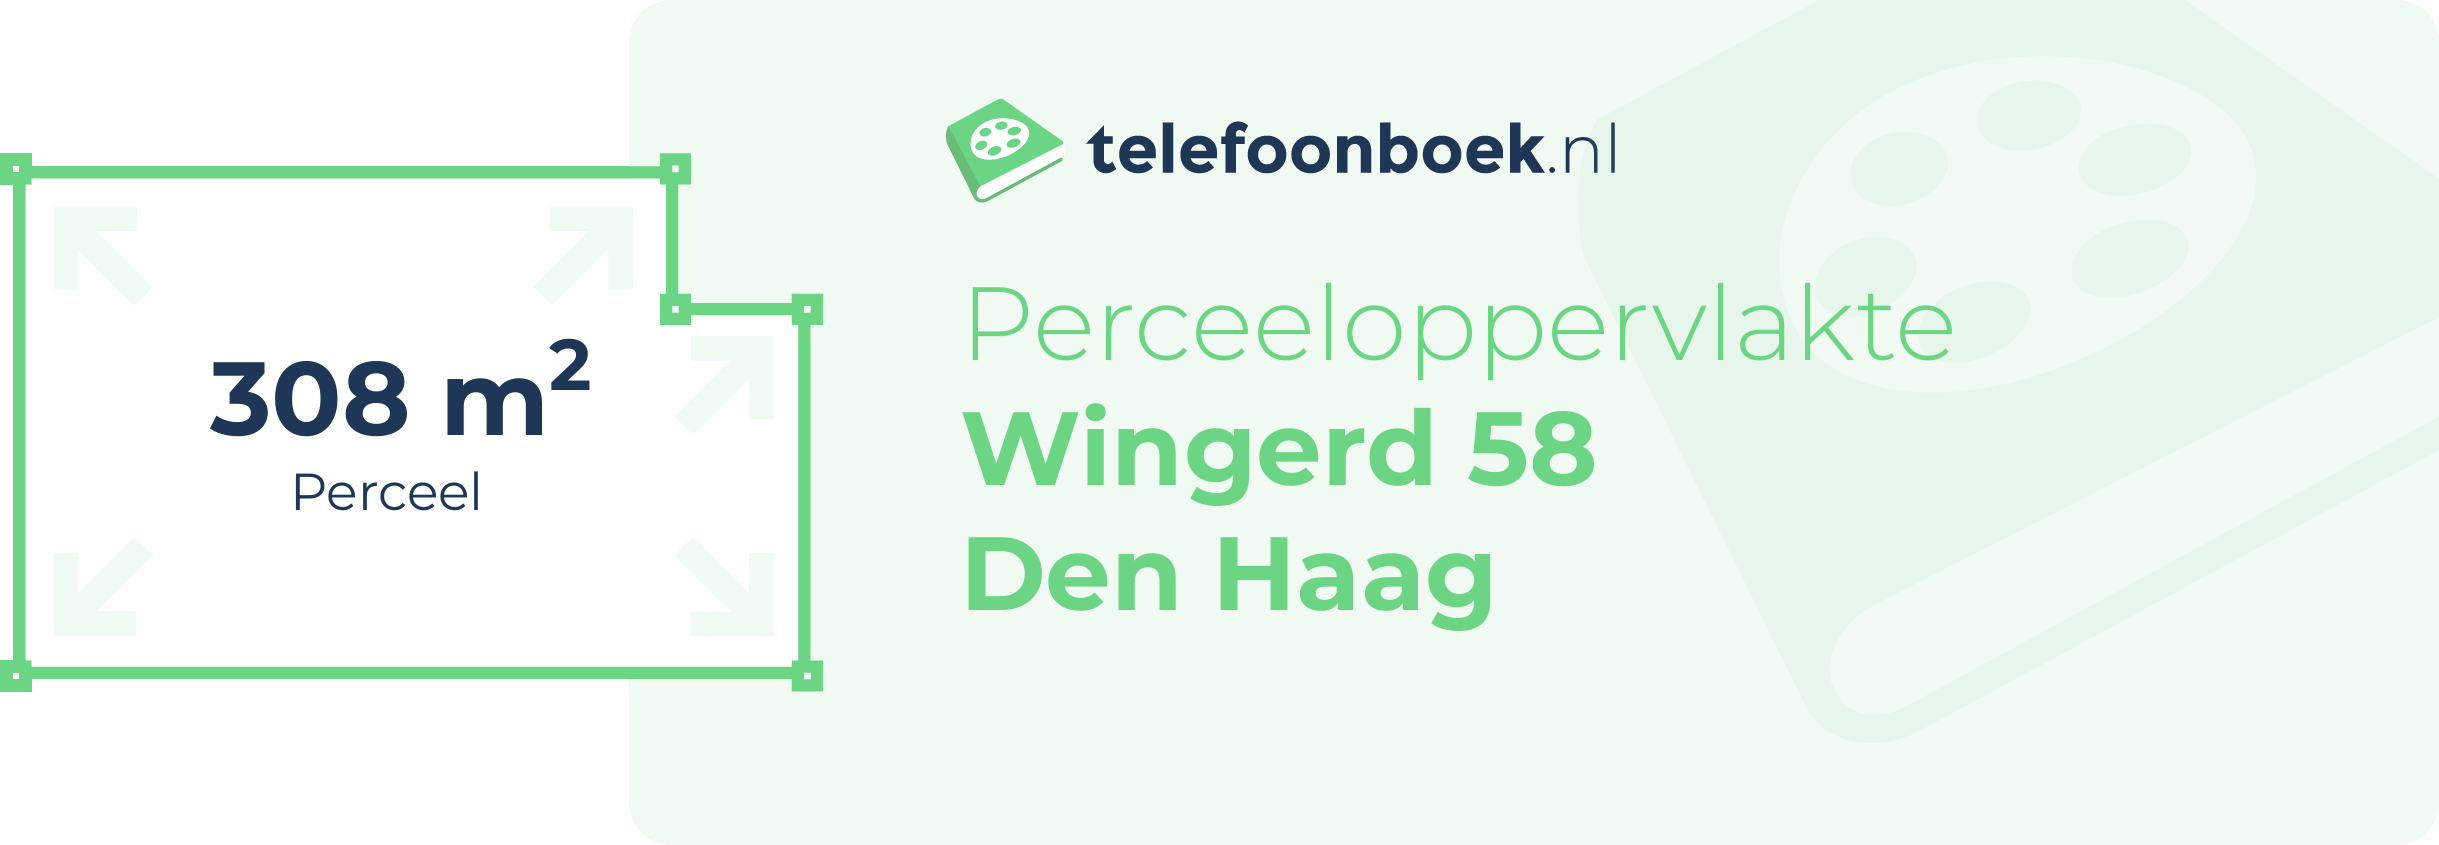 Perceeloppervlakte Wingerd 58 Den Haag